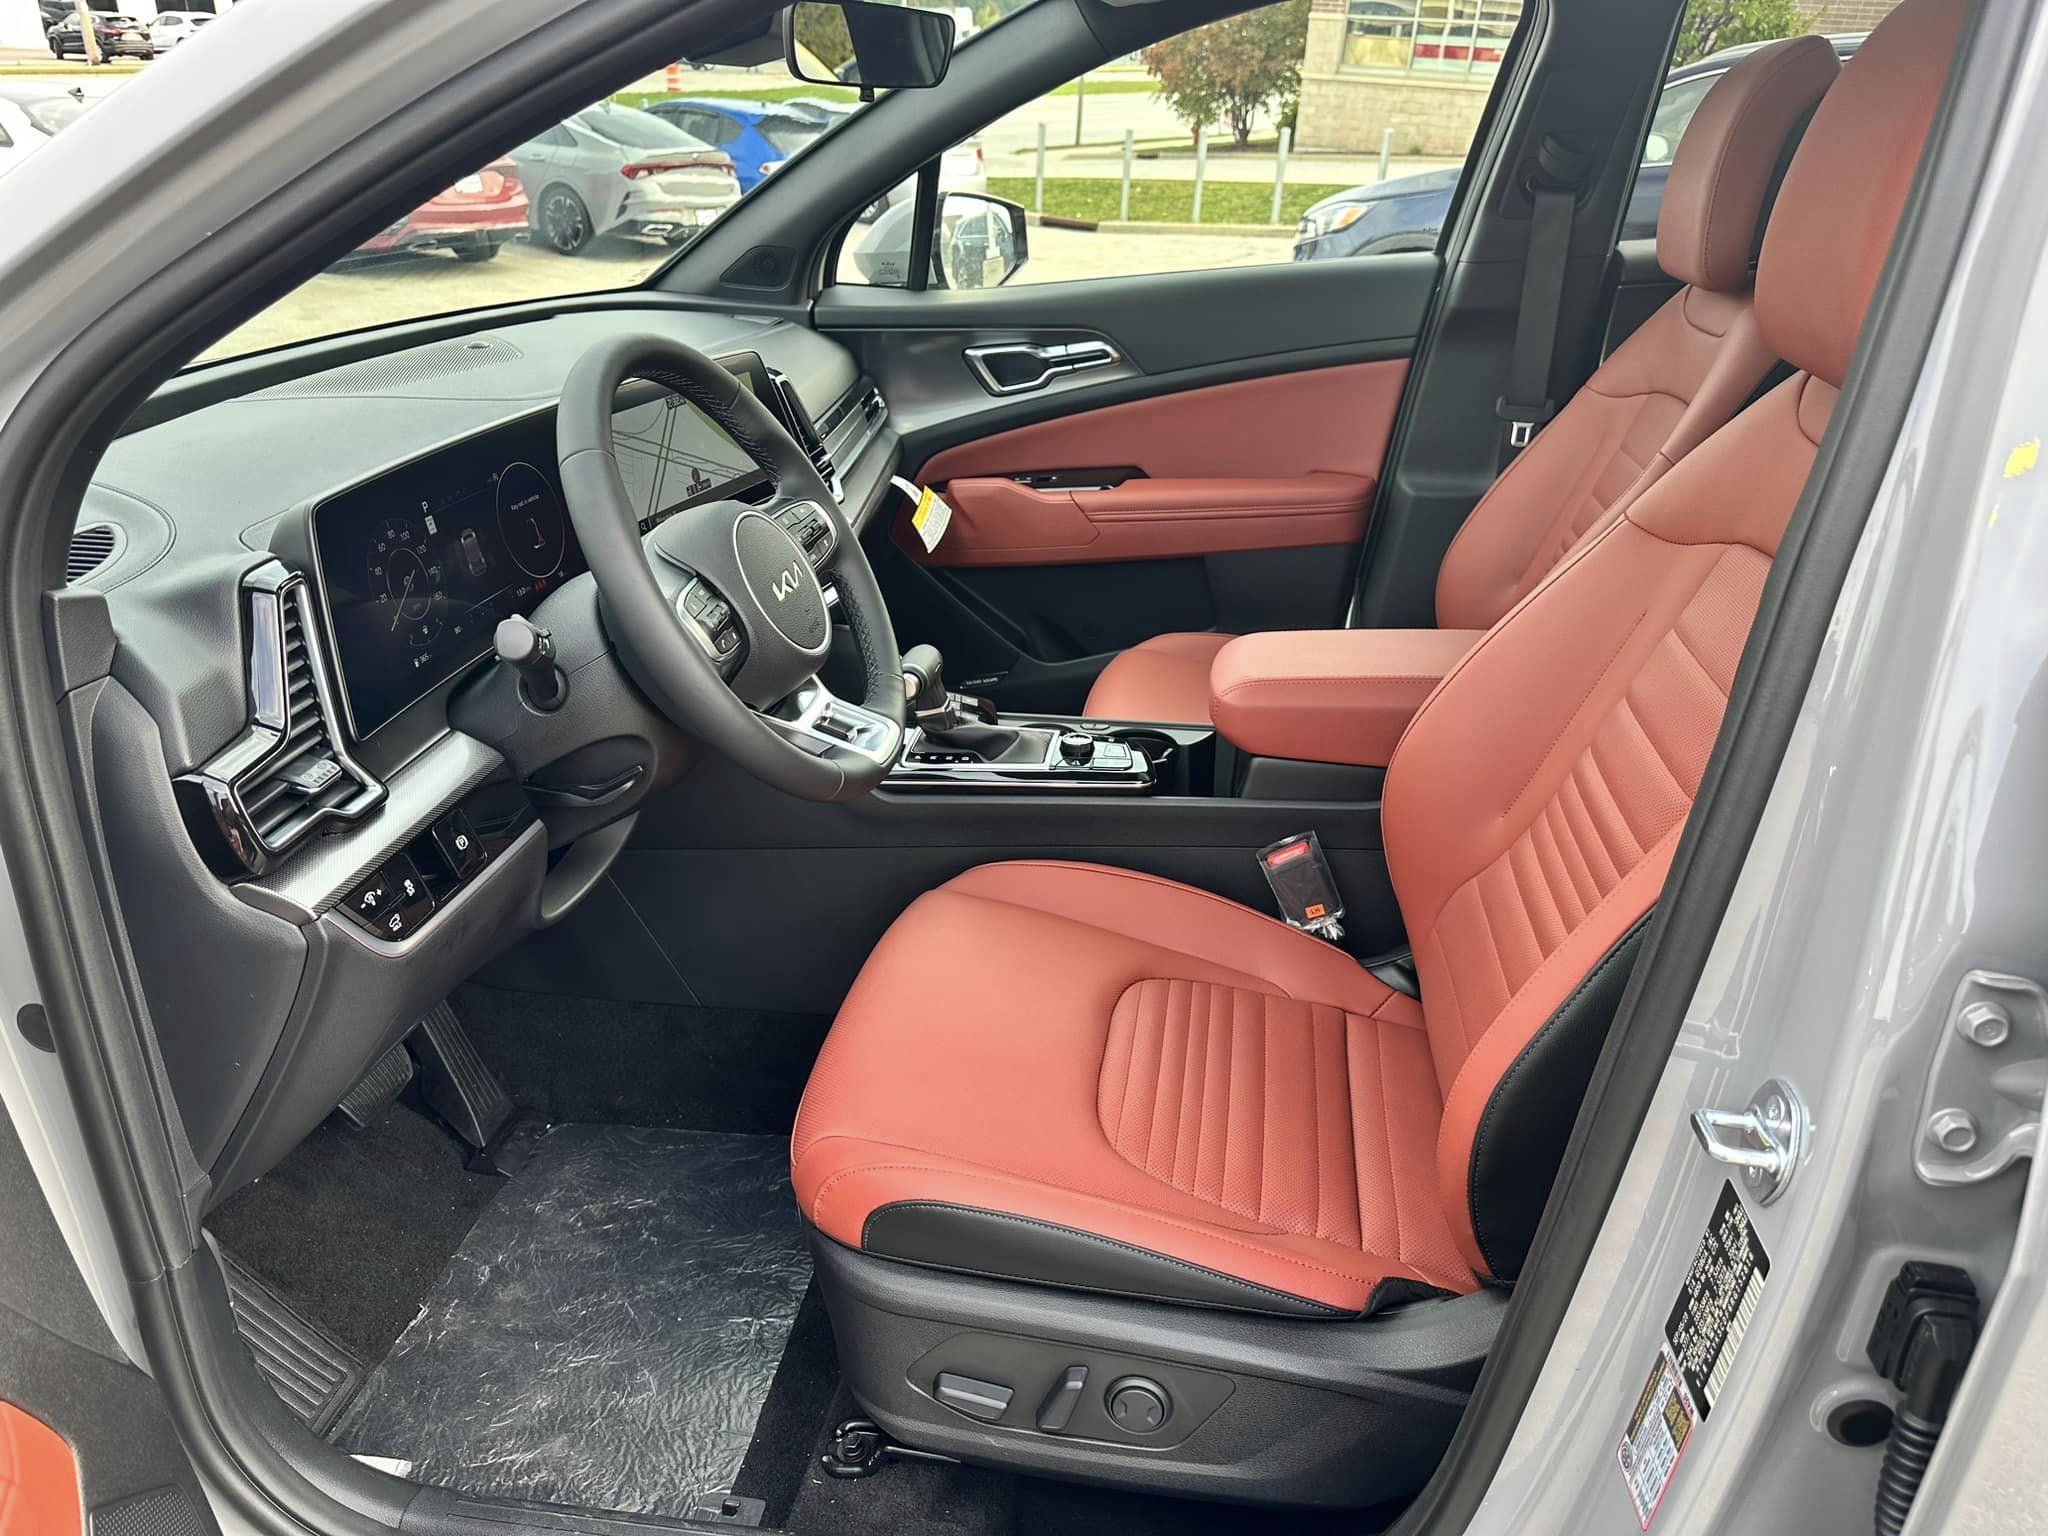 2024 Kia Sportage - Wolf Gray/Carmine Red Interior - SX Prestige Trim - Driver's Cockpit